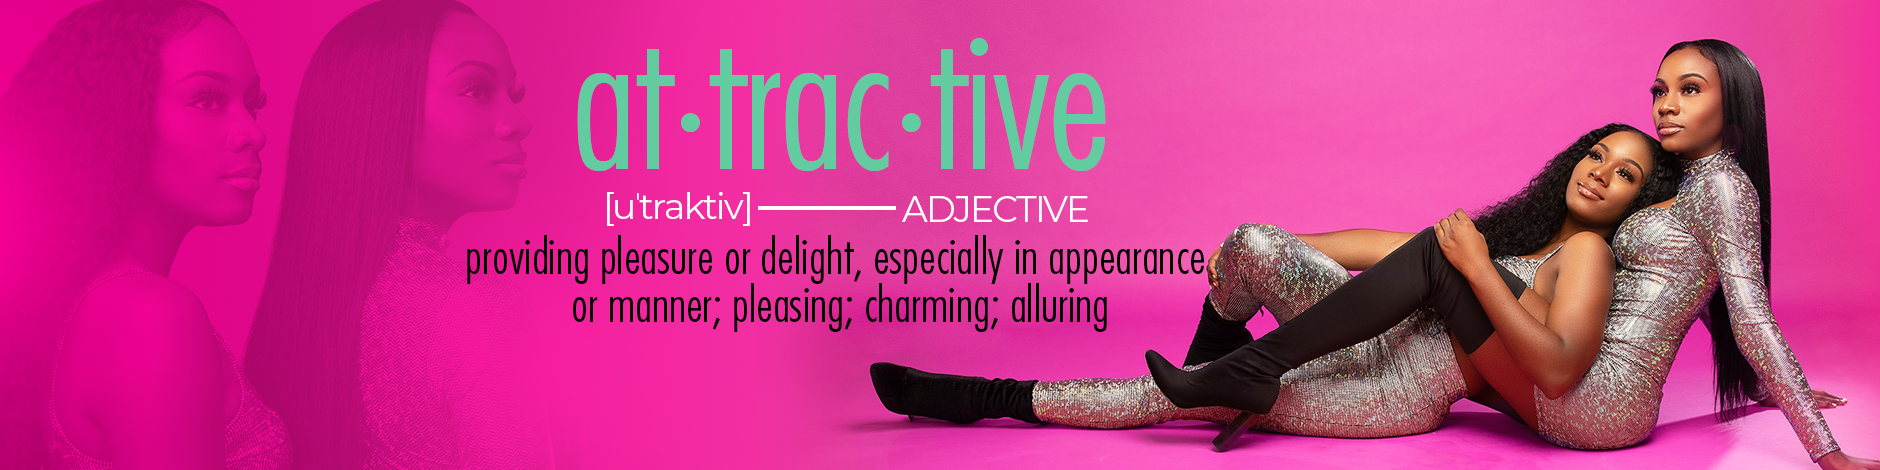 Attractive Attachments 